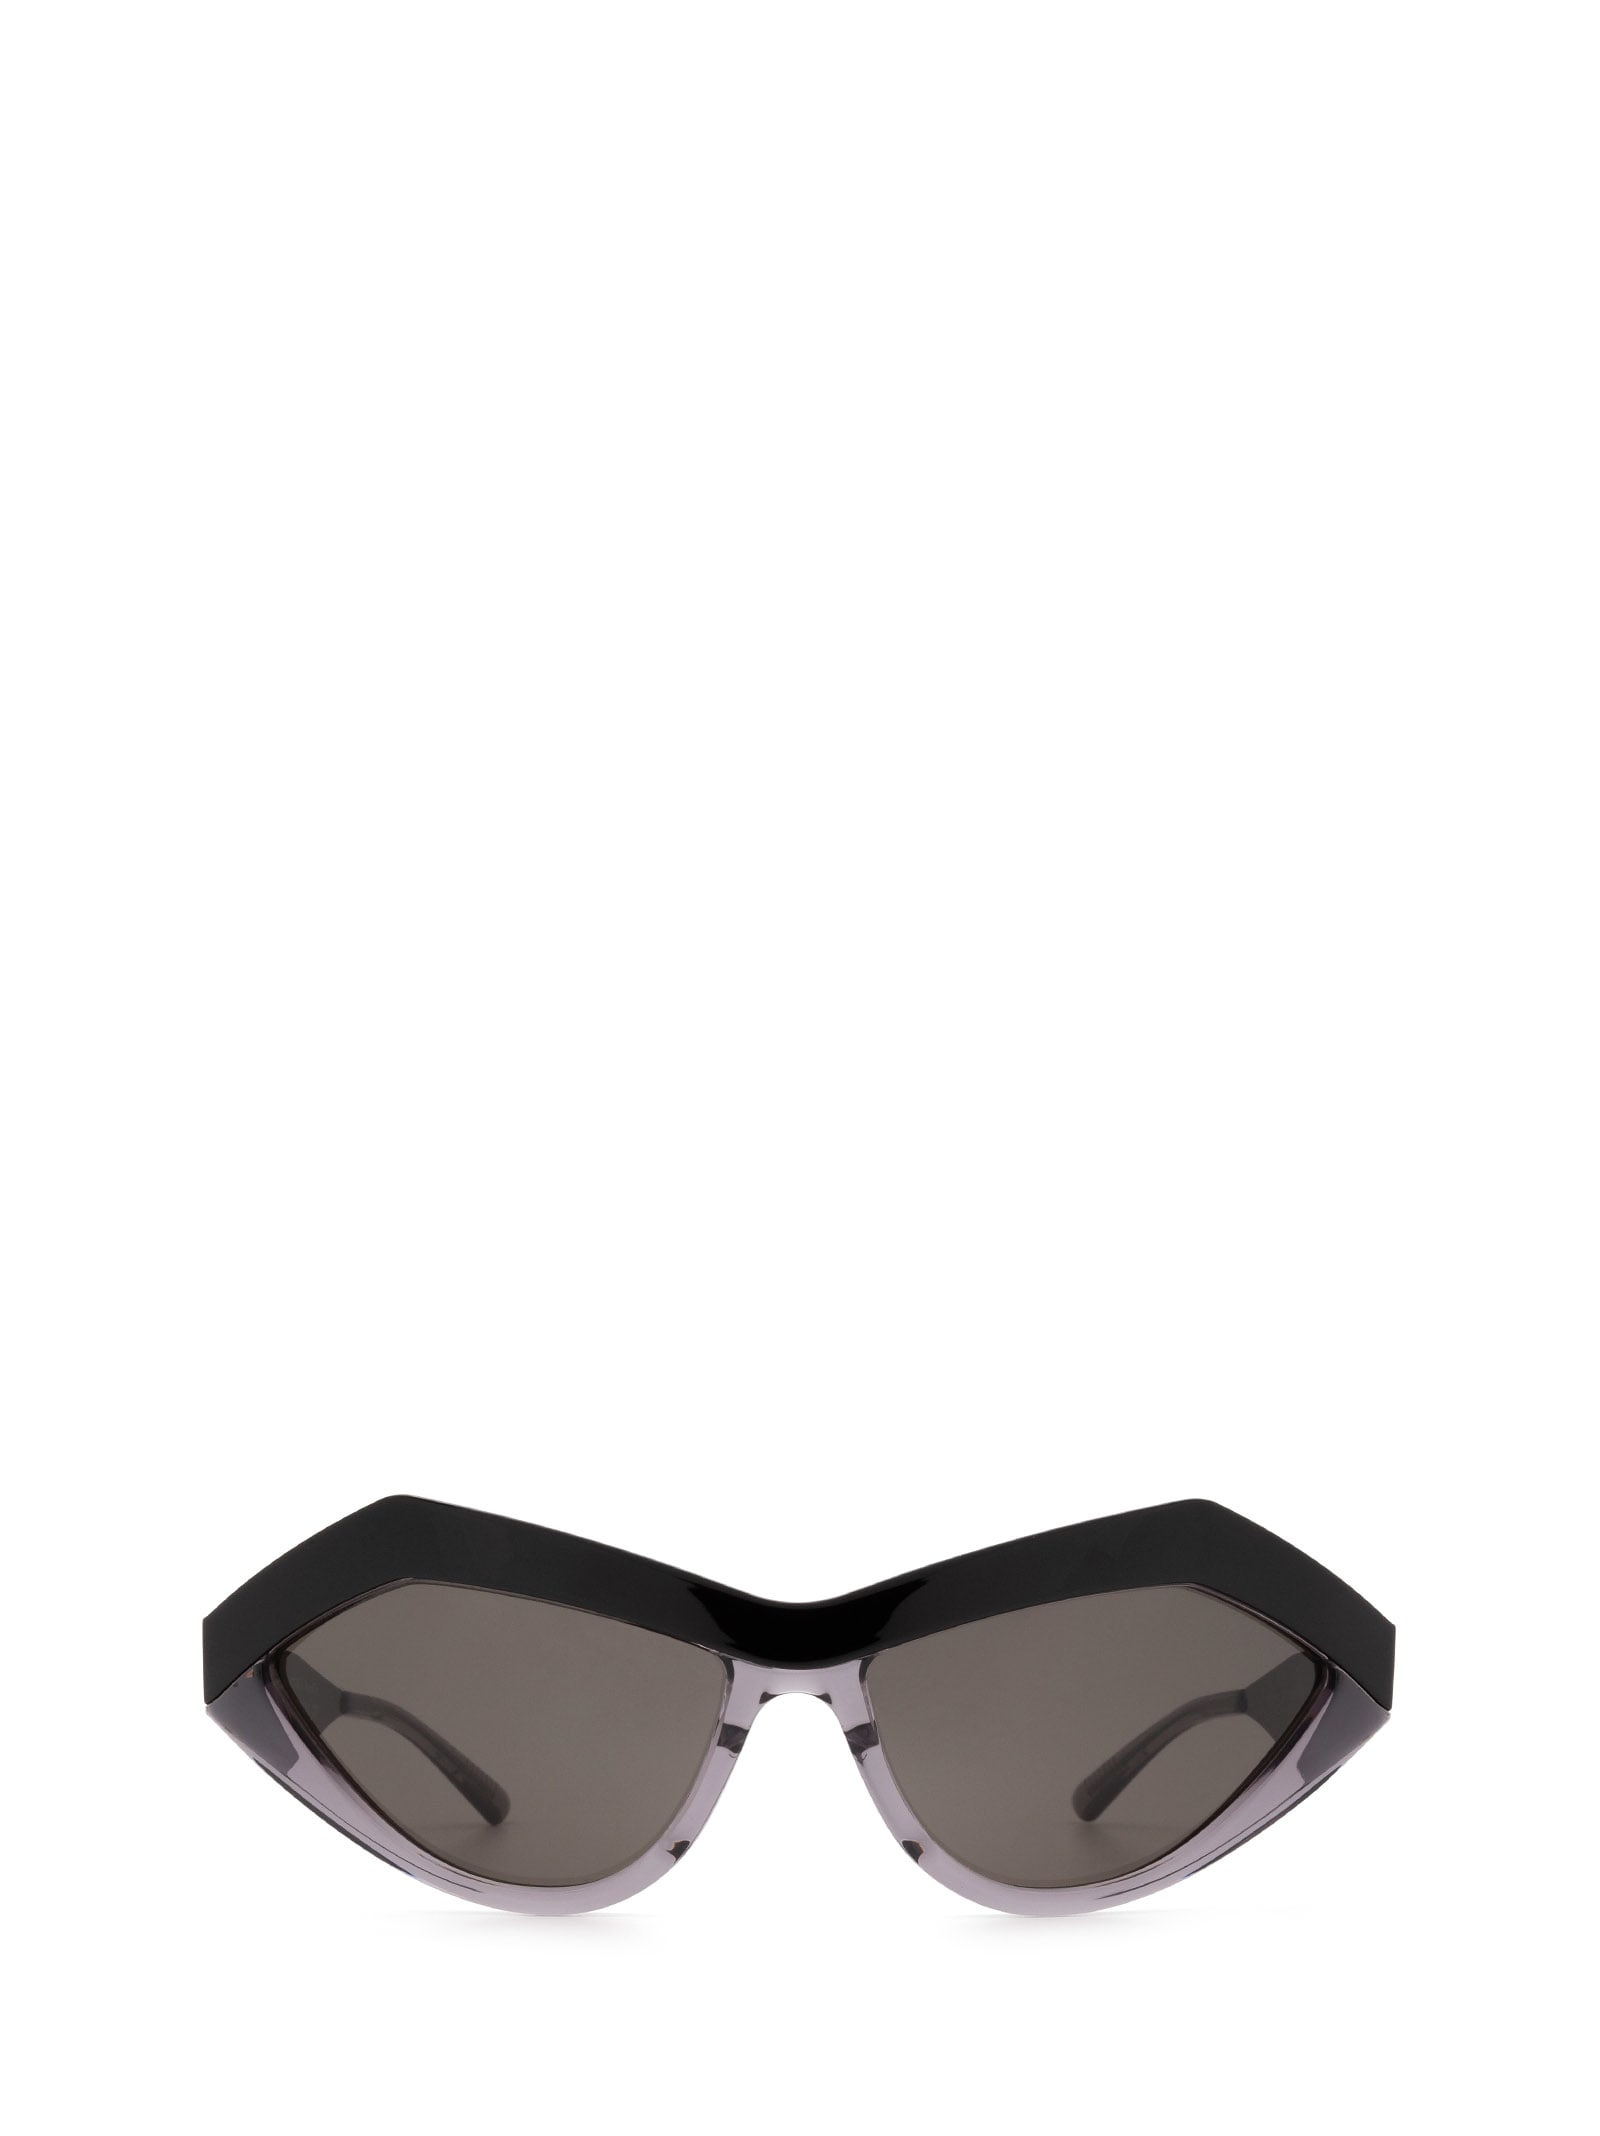 Bottega Veneta Bottega Veneta Bv1055s Black Sunglasses